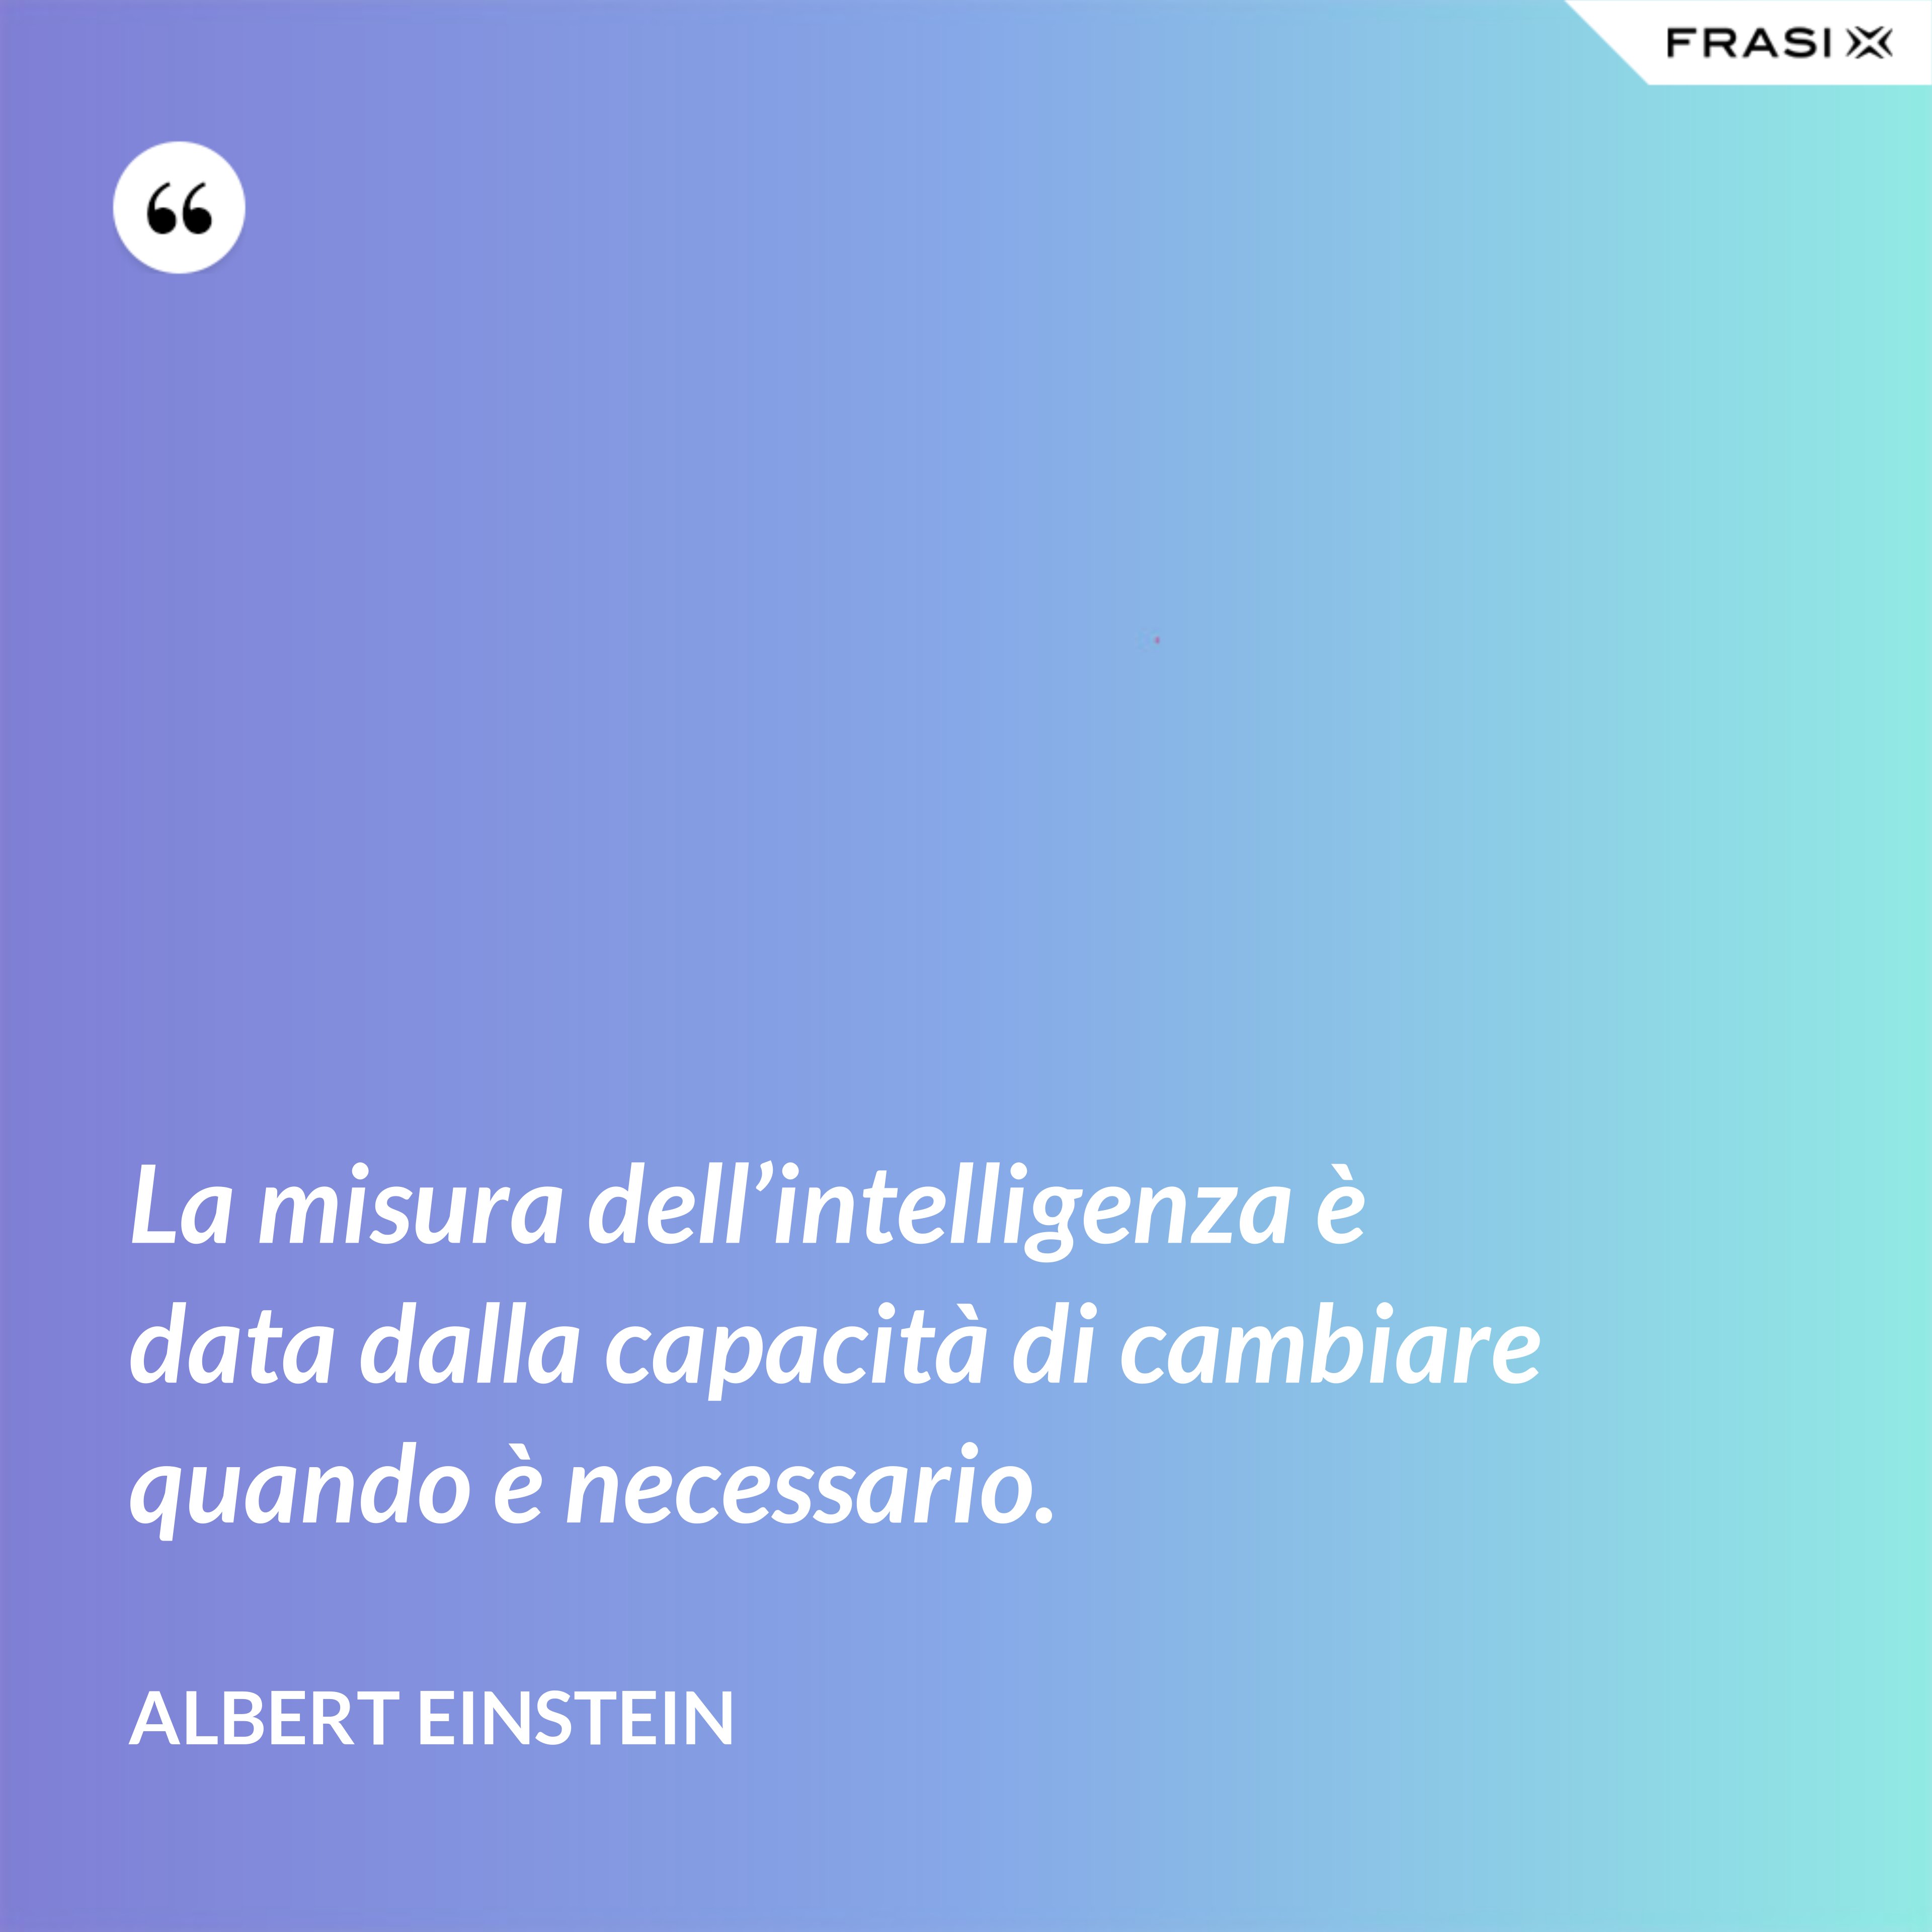 La misura dell’intelligenza è data dalla capacità di cambiare quando è necessario. - Albert Einstein